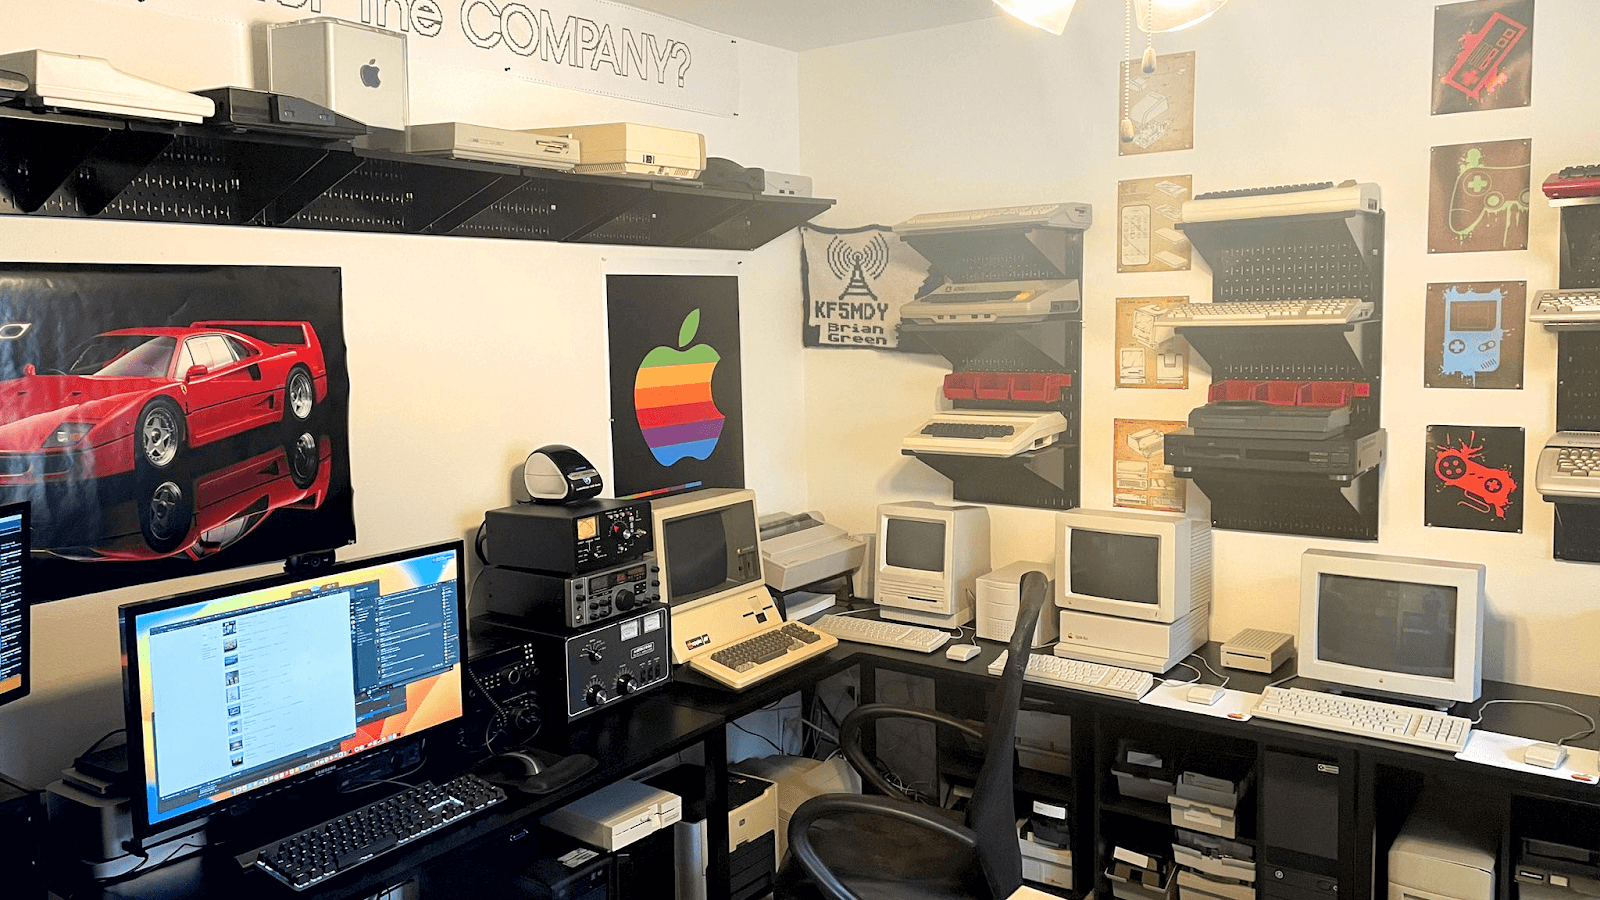 Домашняя компьютерная лаборатория Брайана Грина, полная старинных сокровищ